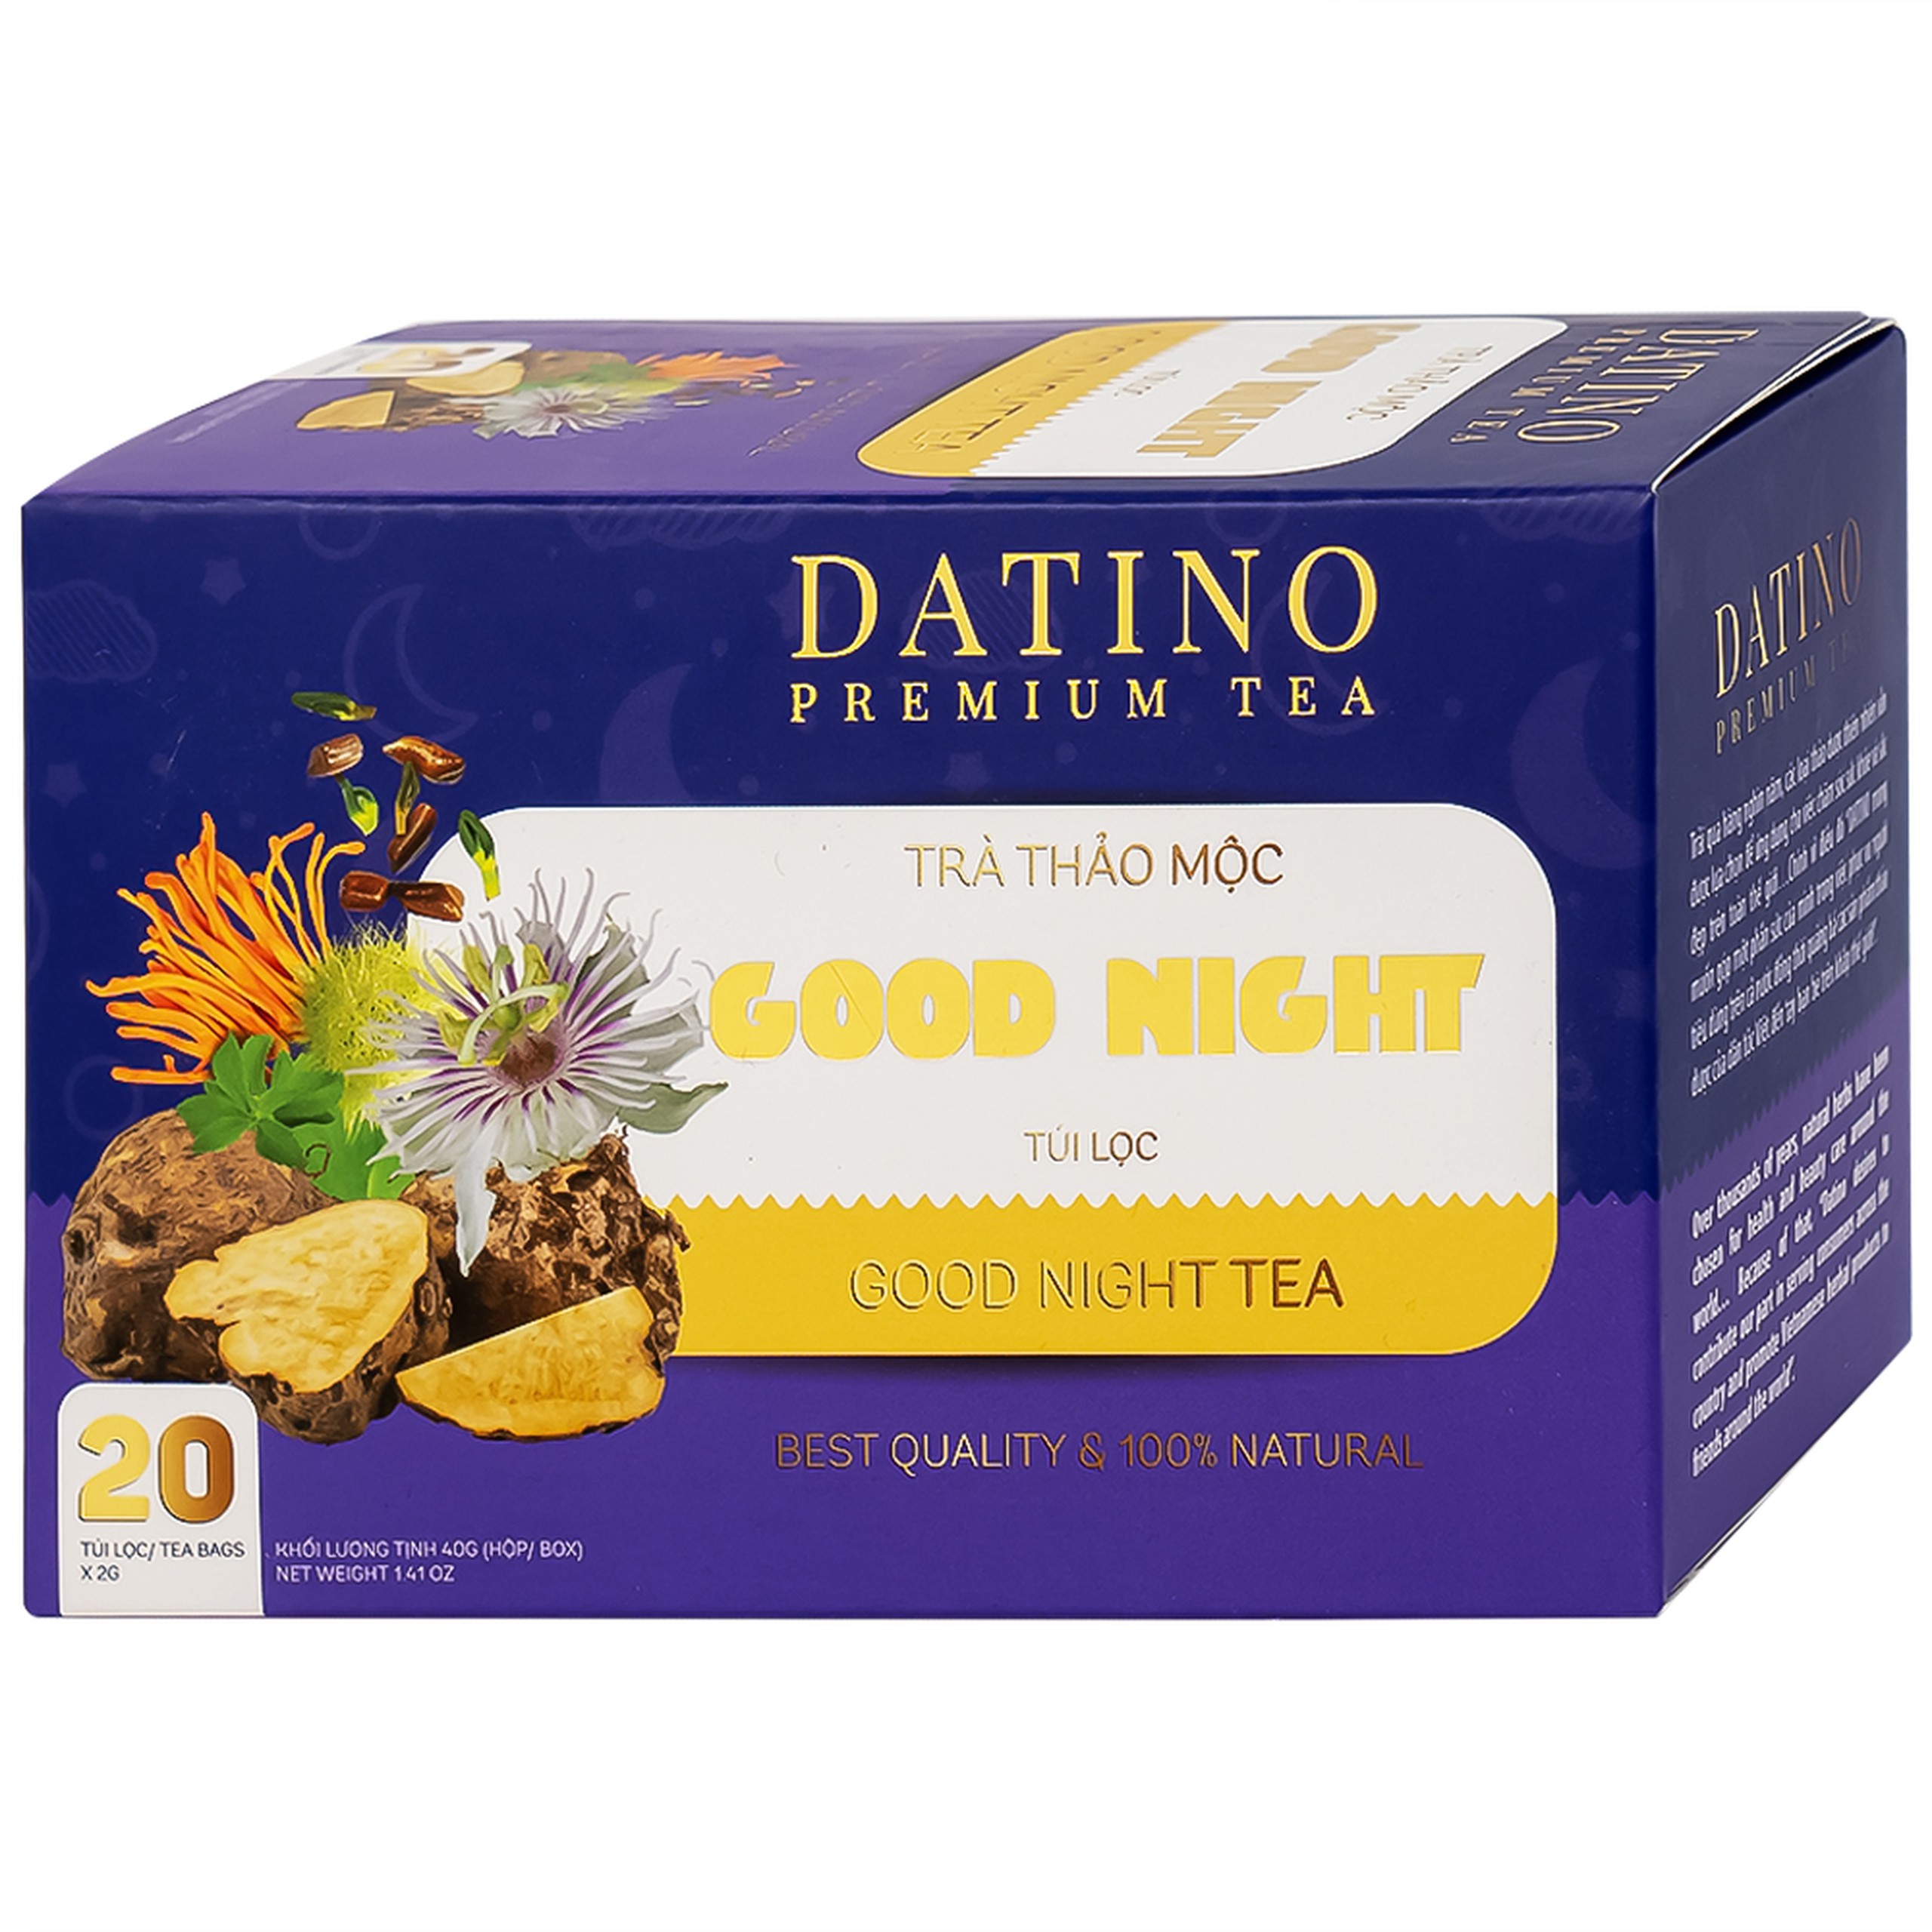 Trà thảo mộc Good Night Datino Premium Tea giúp tạo giấc ngủ tự nhiên (20 túi x 2g)